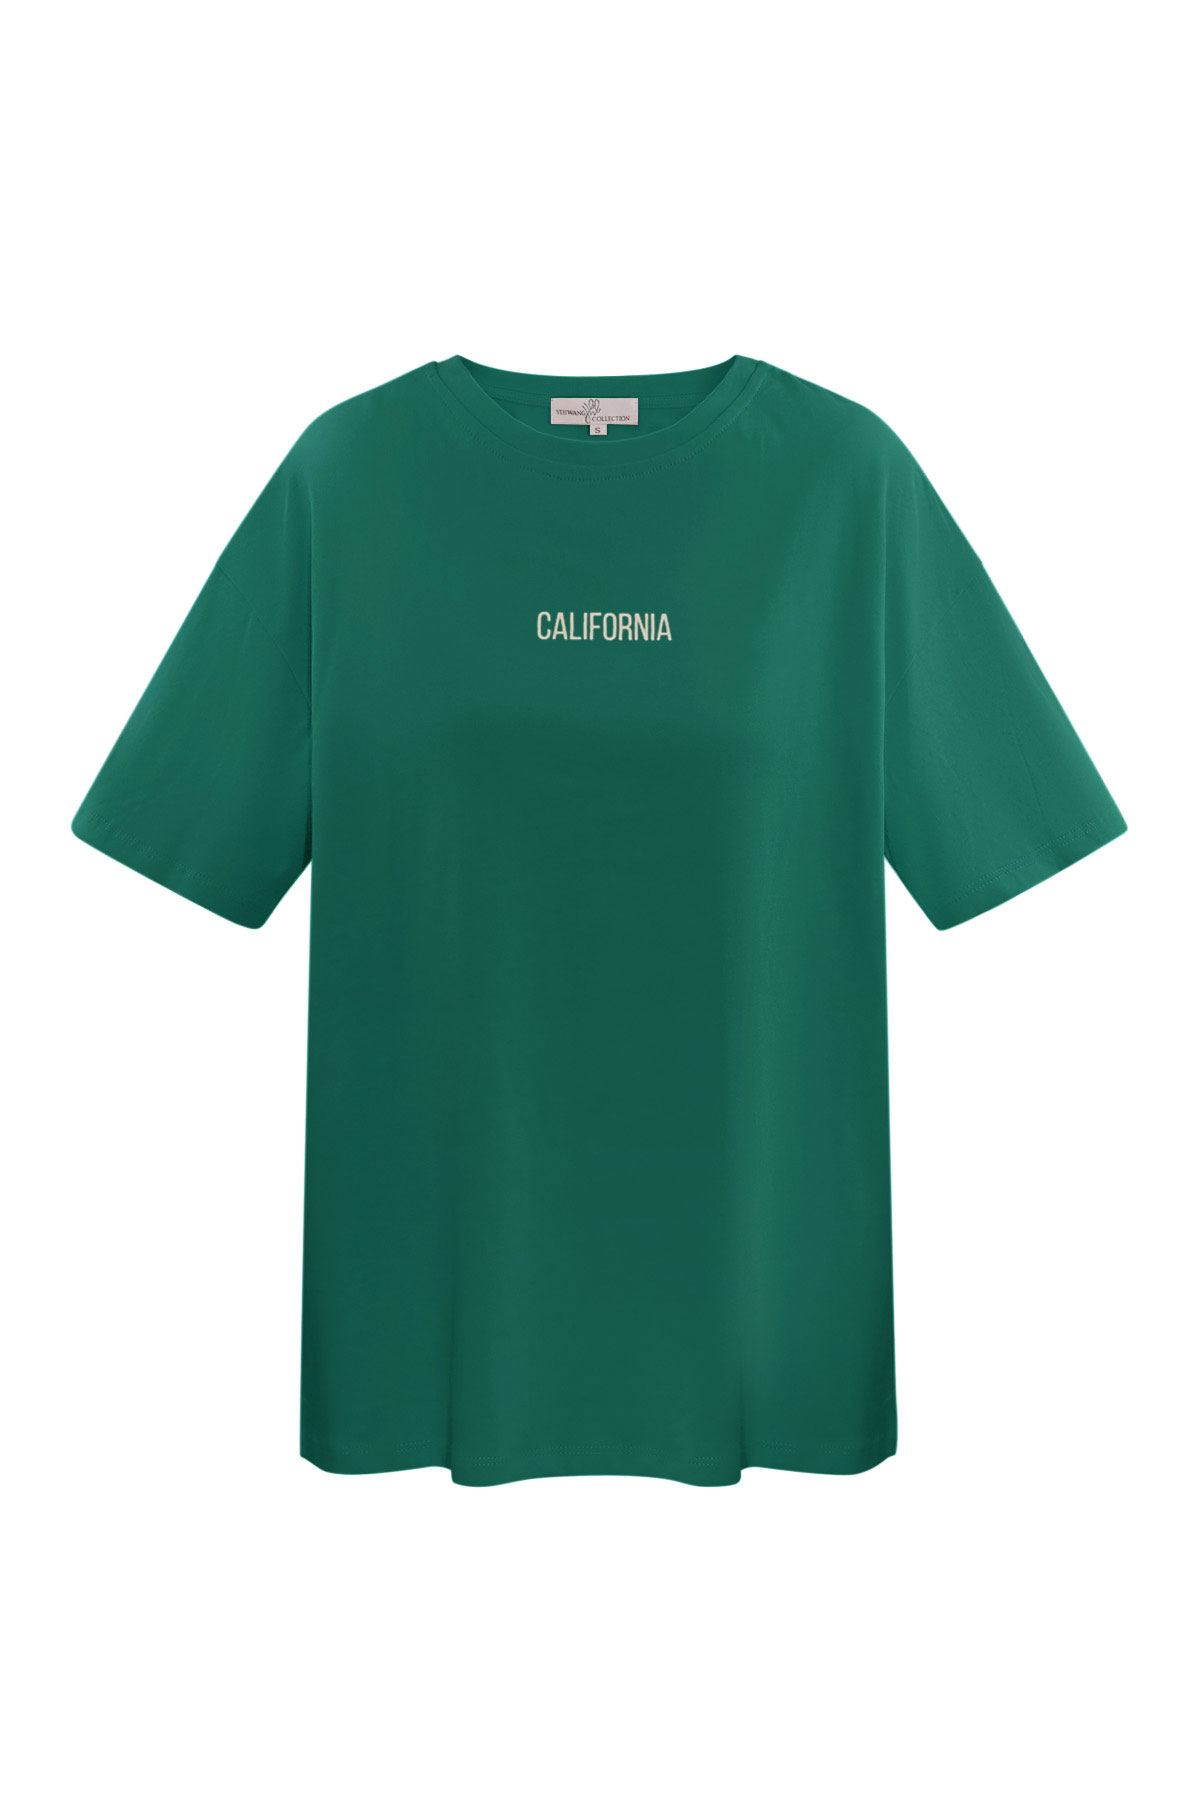 Maglietta California - verde